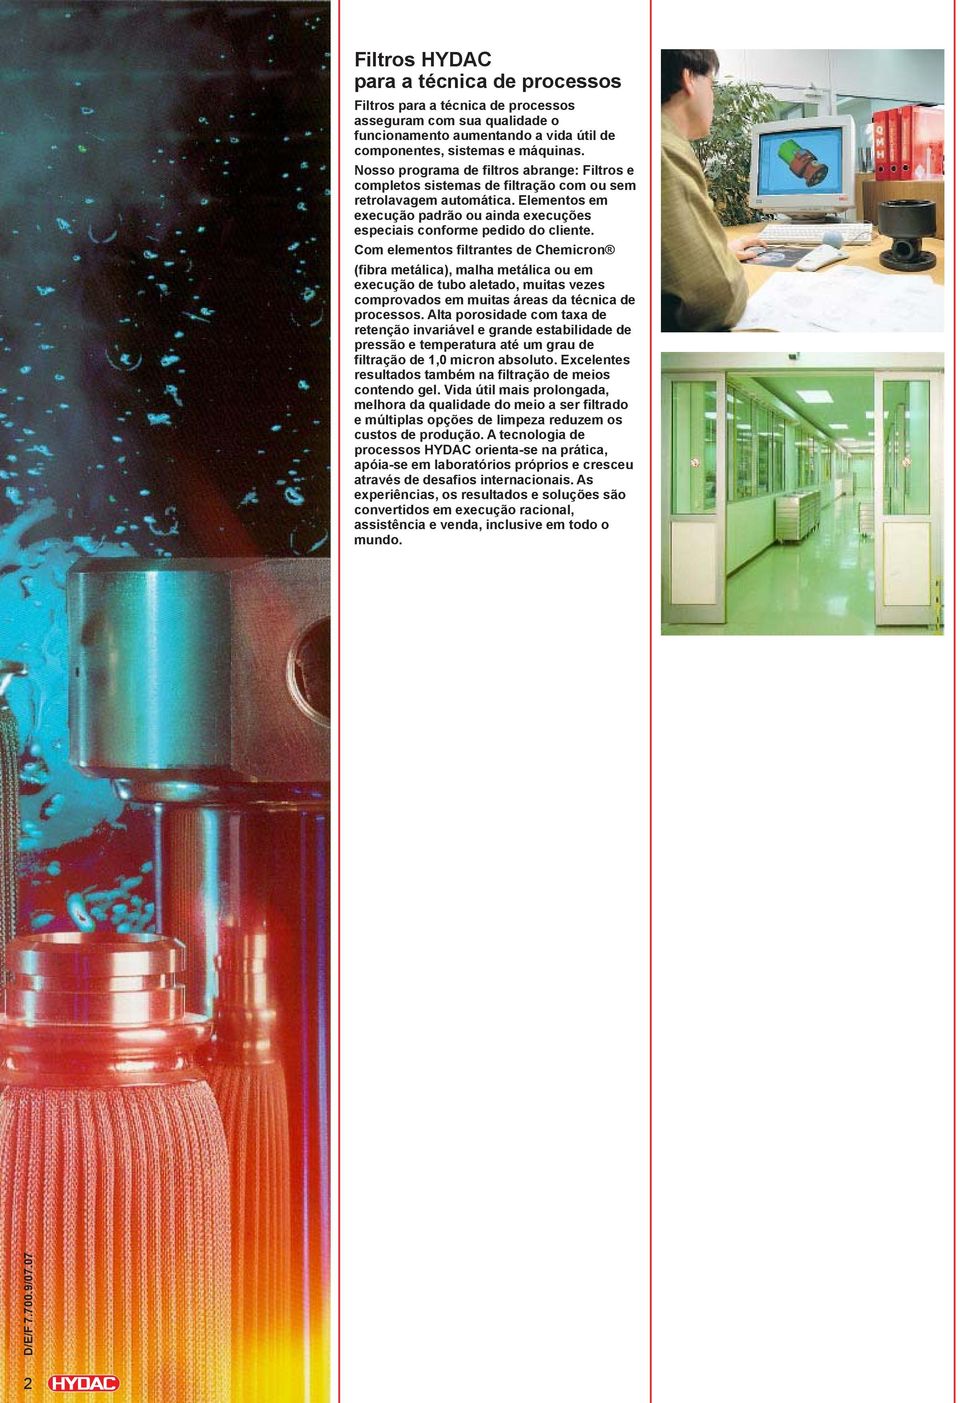 Com elementos filtrantes de Chemicron (fibra metálica), malha metálica ou em execução de tubo aletado, muitas vezes comprovados em muitas áreas da técnica de processos.